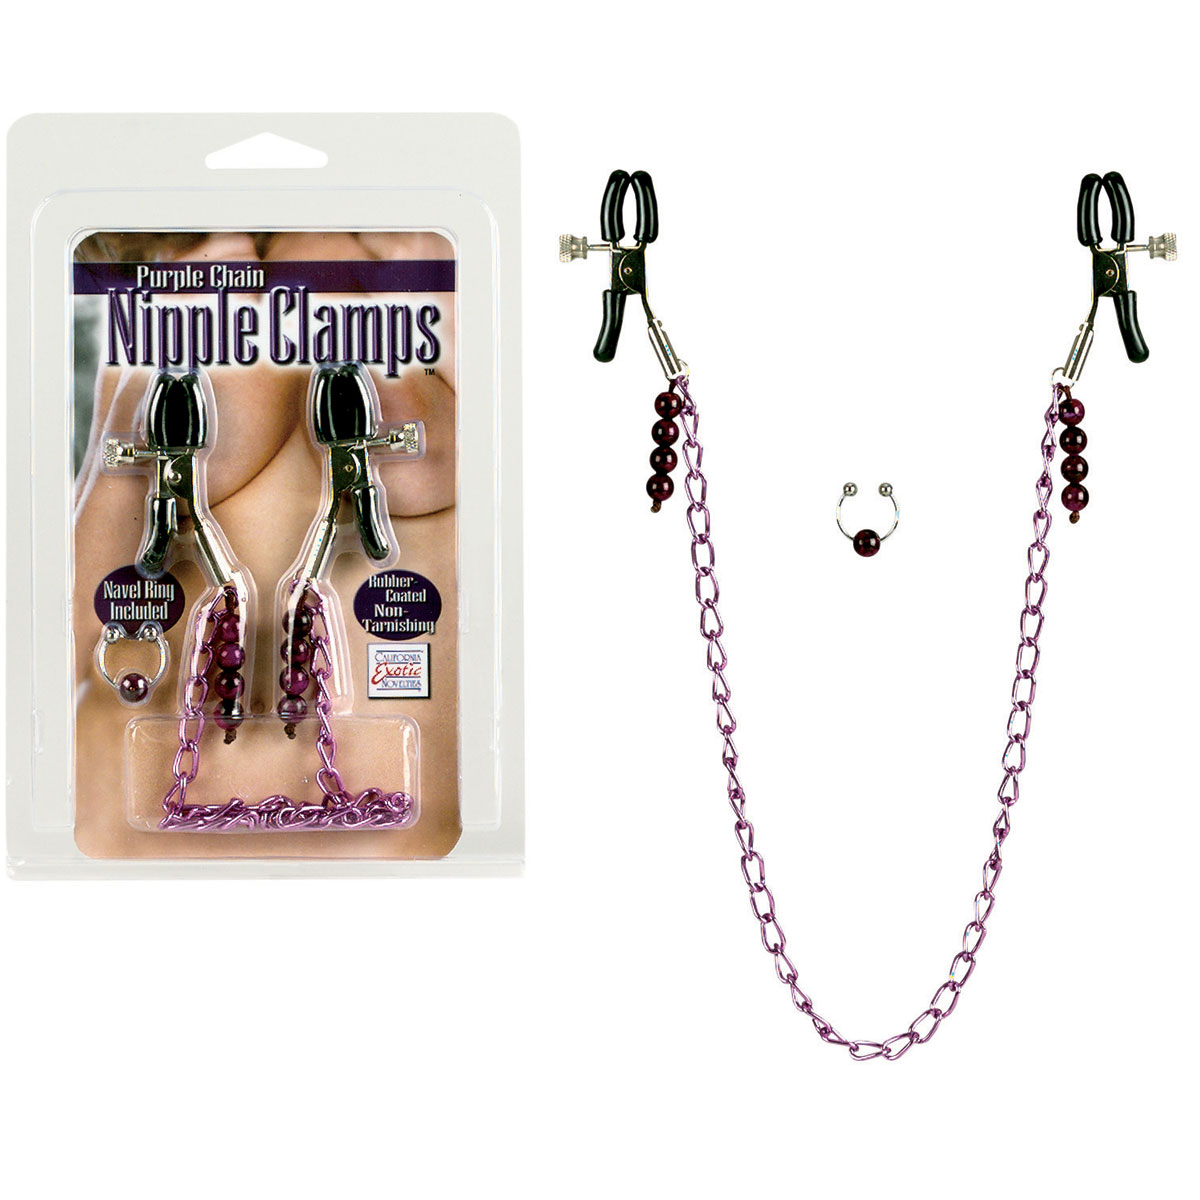 Фиолетовая цепь с зажимами на соски Purple Chain Nipple Clamps - фото 128751